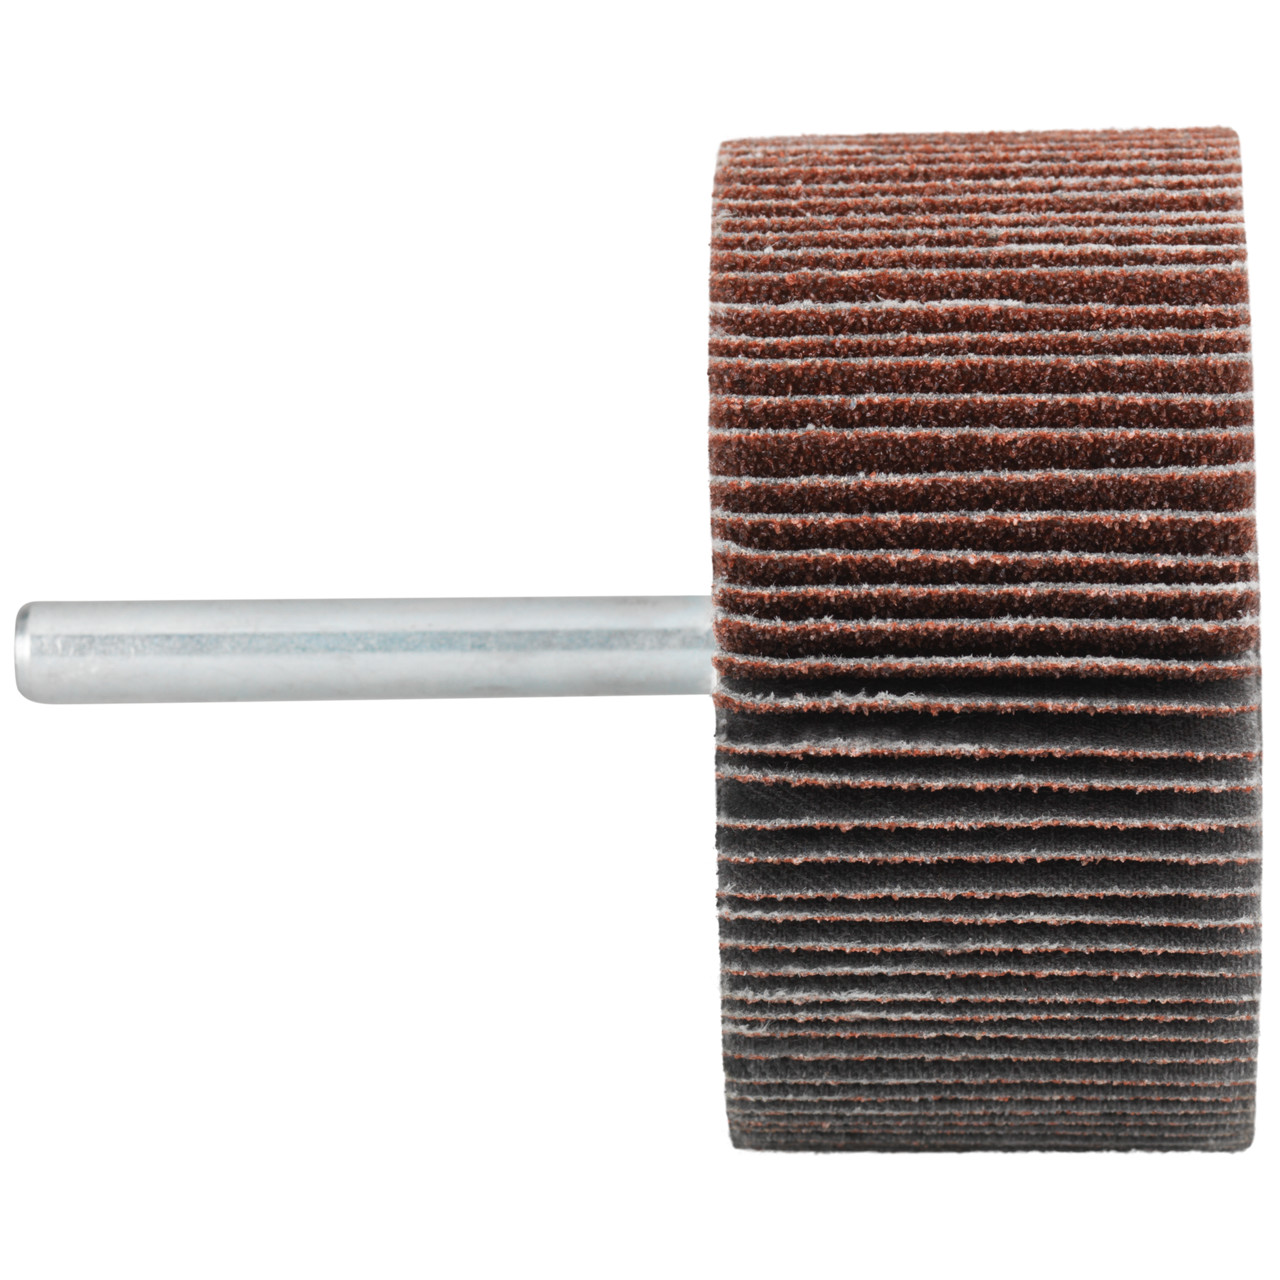 Tyrolit A-P01 C X Pennen DxD 40x10 Voor staal, roestvast staal en non-ferrometalen, P120, vorm: 52LA, Art. 82079